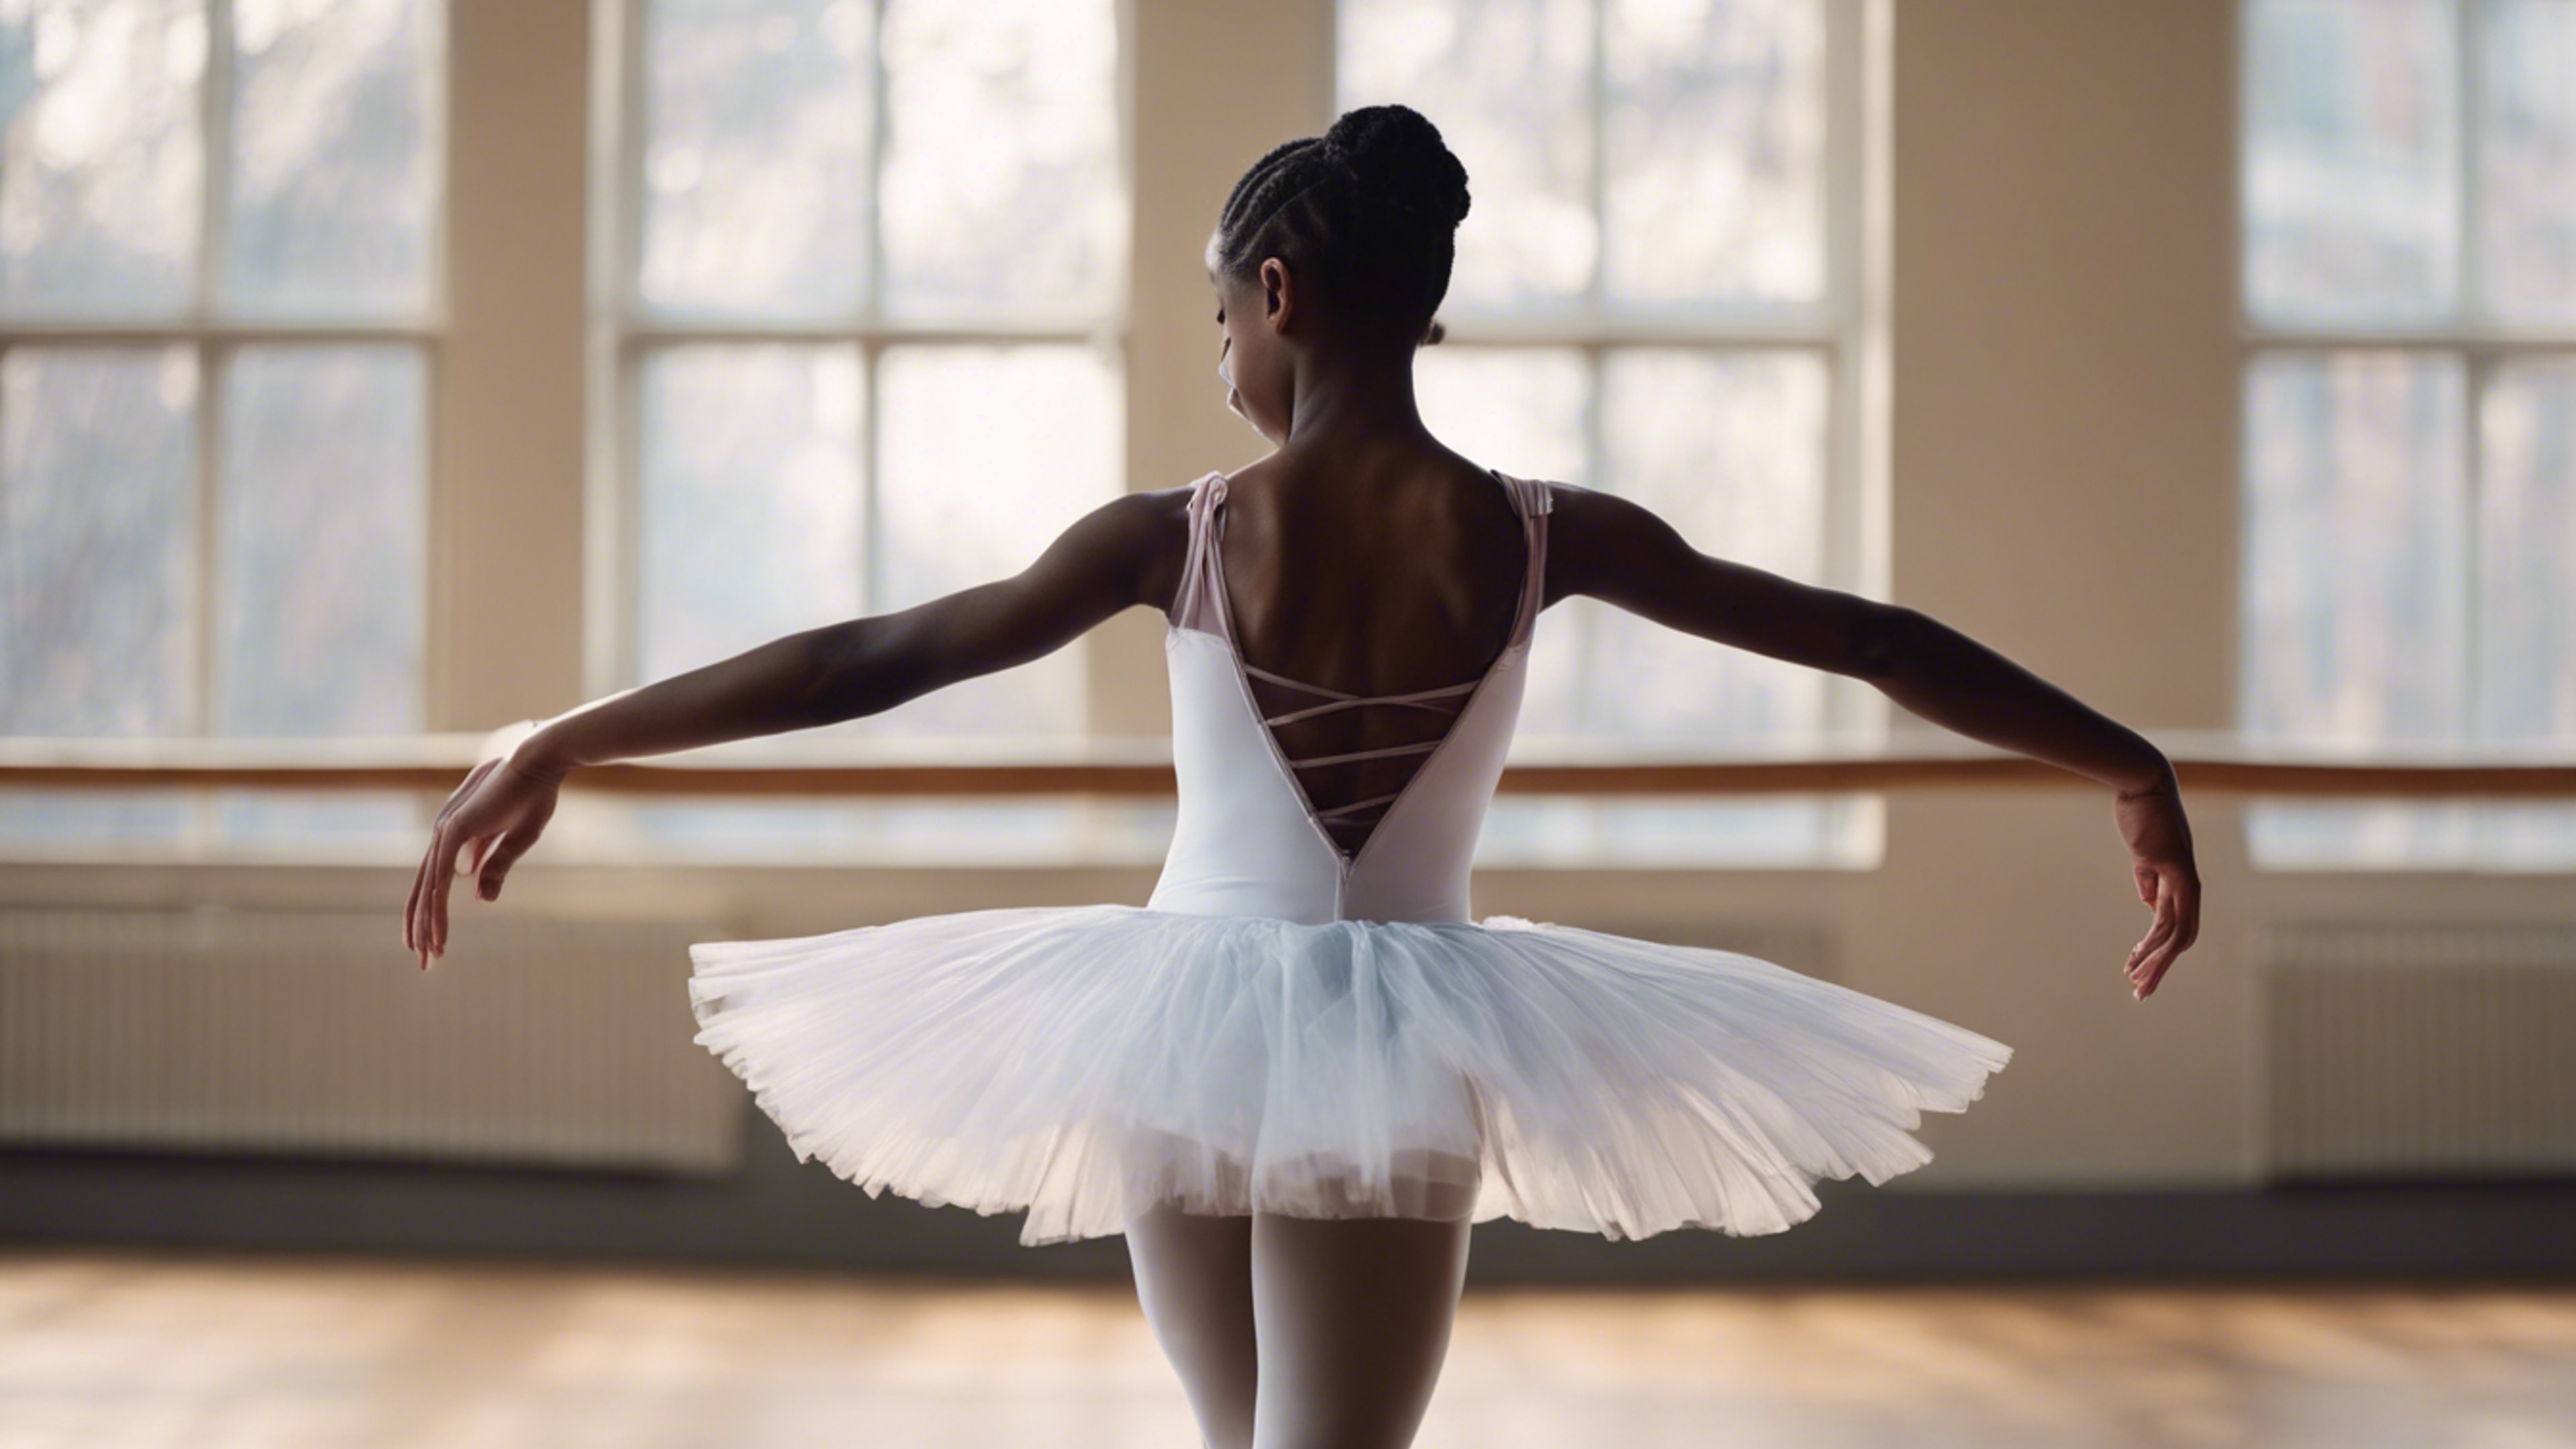 A young black girl practicing ballet in a beautiful satin tutu. duvar kağıdı[c9fc18550cde4bfca1b8]